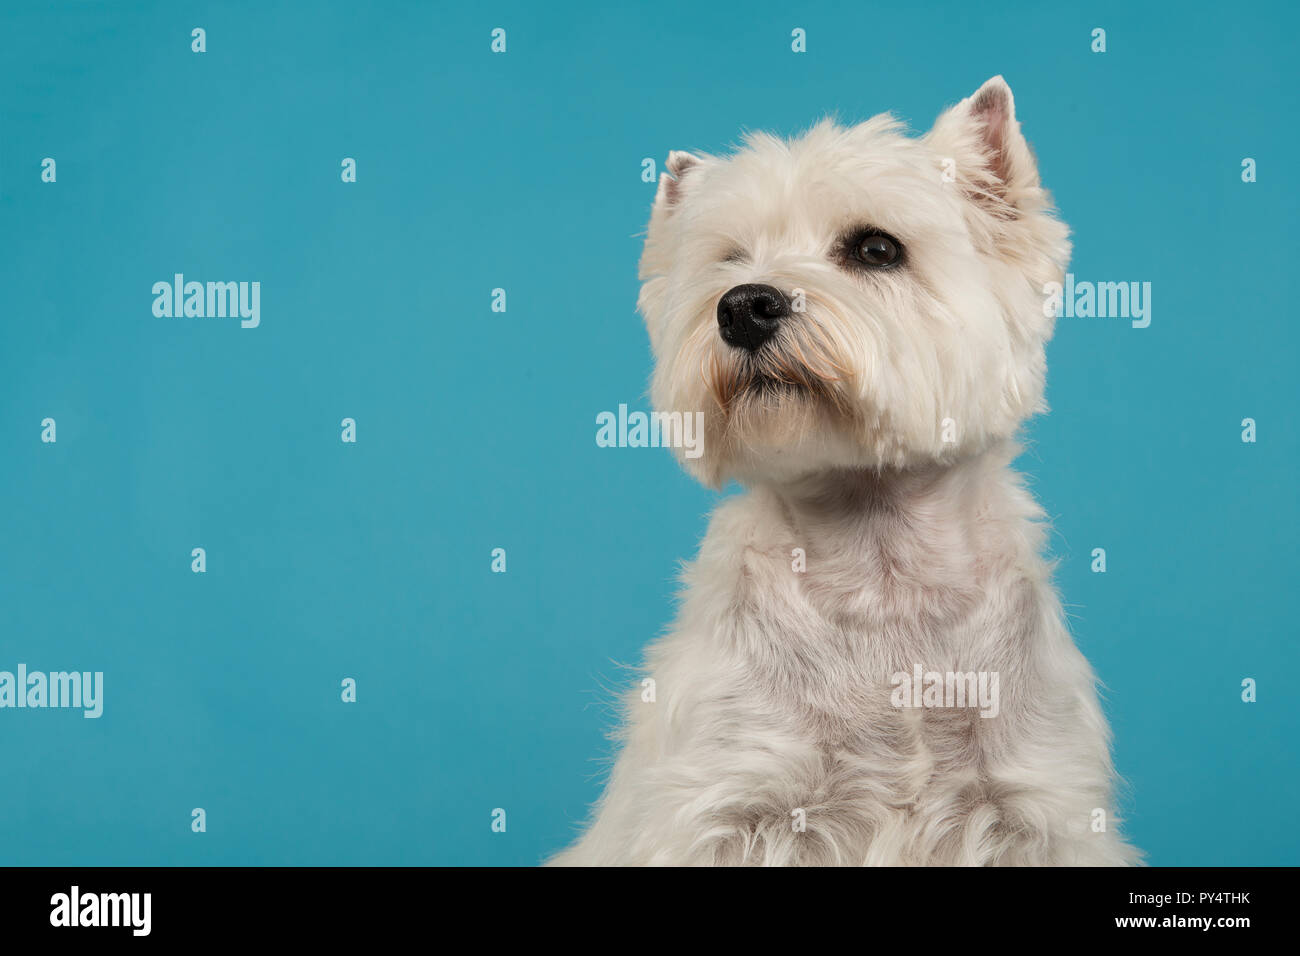 Ritratto di un West Highland White Terrier o westie cane cercando su uno sfondo blu Foto Stock